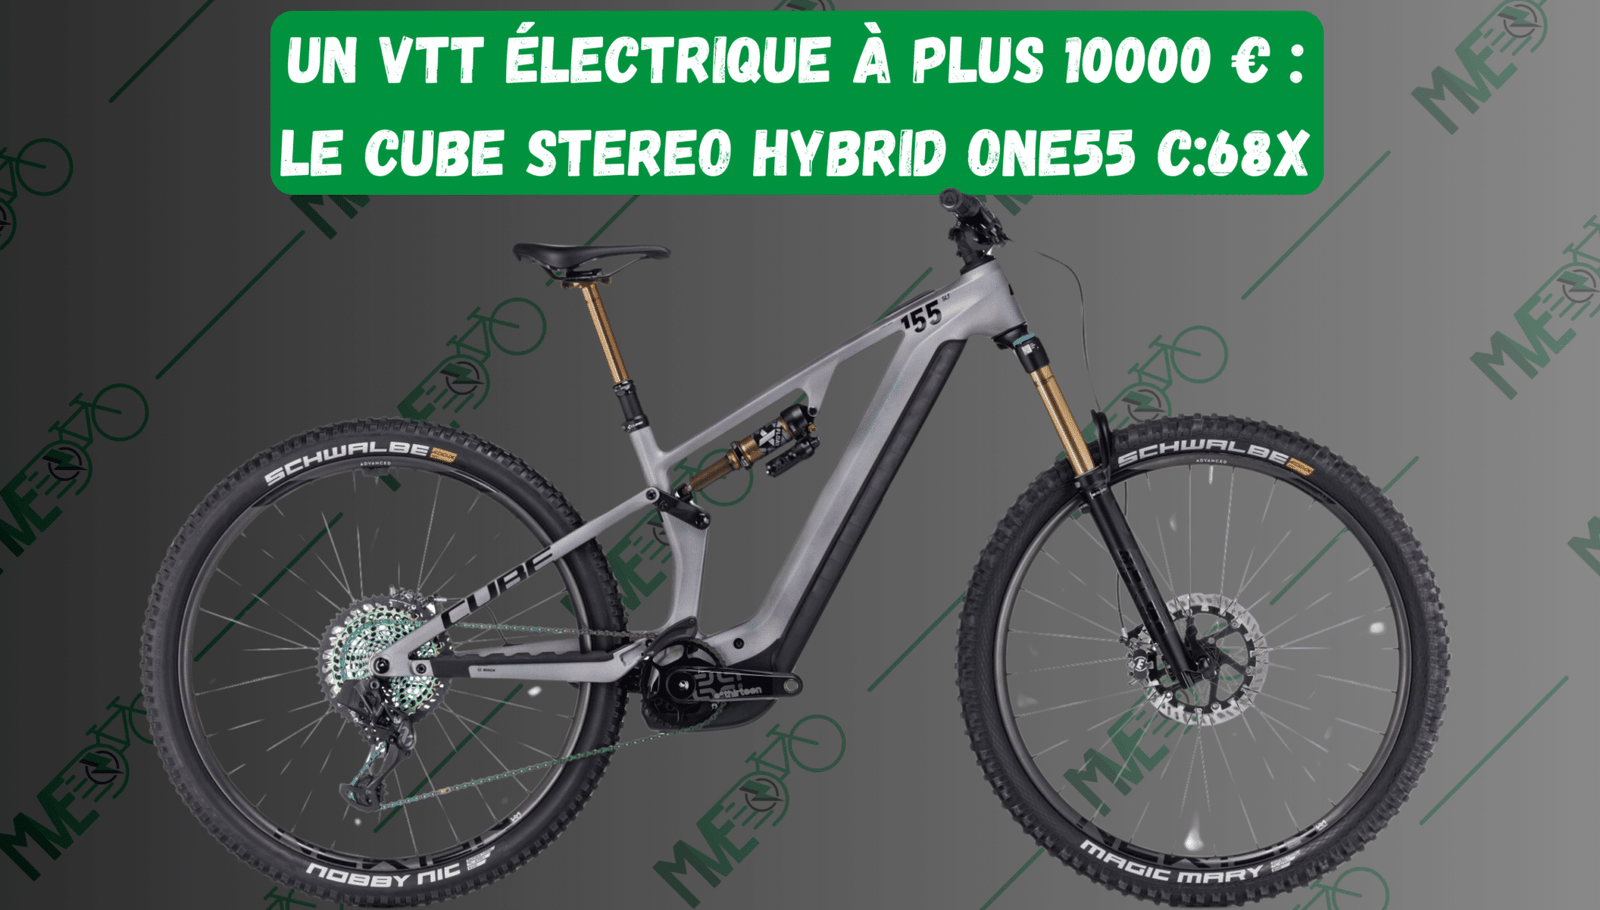 Cube Stereo Hybrid One55 C:68X à plus de 10000 €